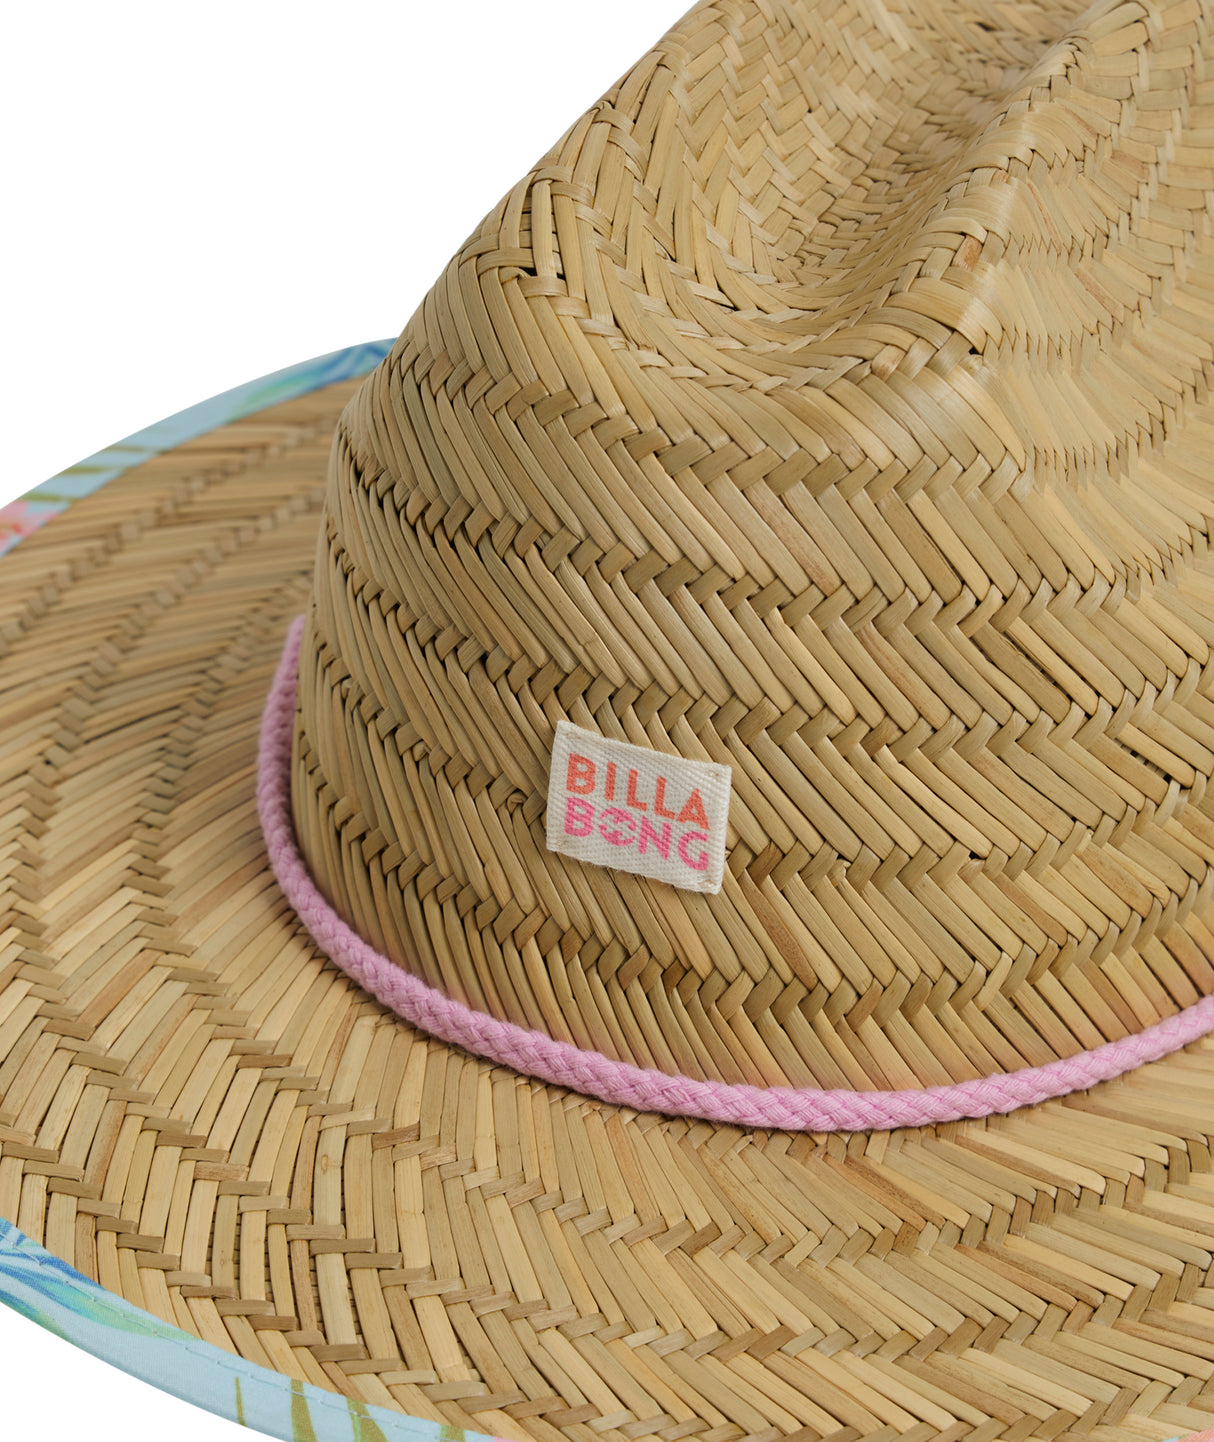 Girls Beach Dayz Hat